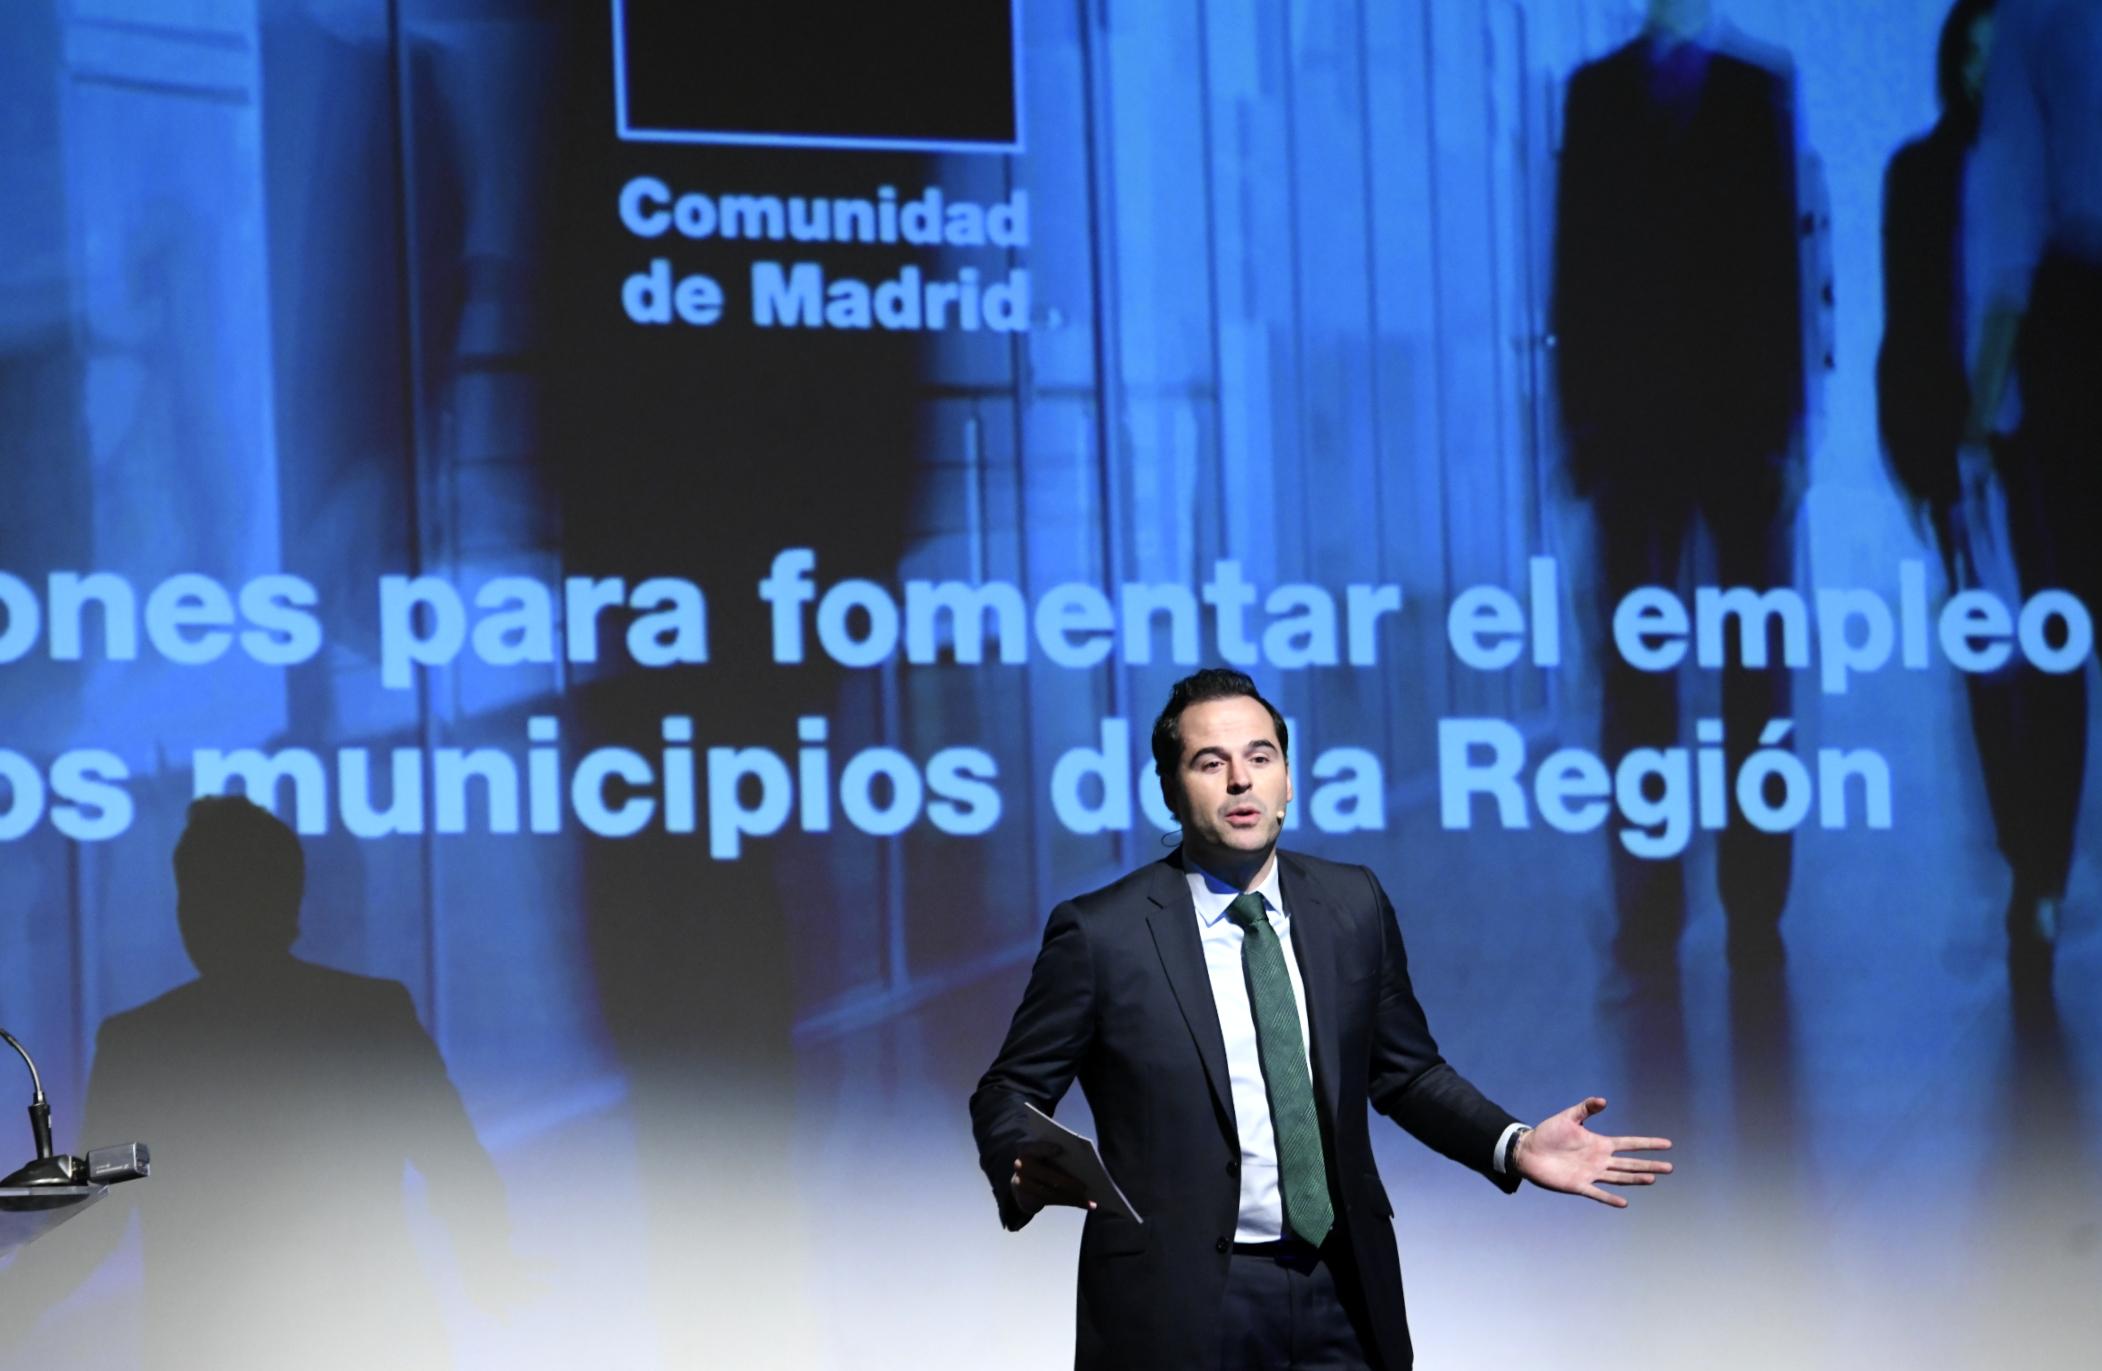 El vicepresidente de la Comunidad de Madrid, Ignacio Aguado, presenta las subvenciones regionales